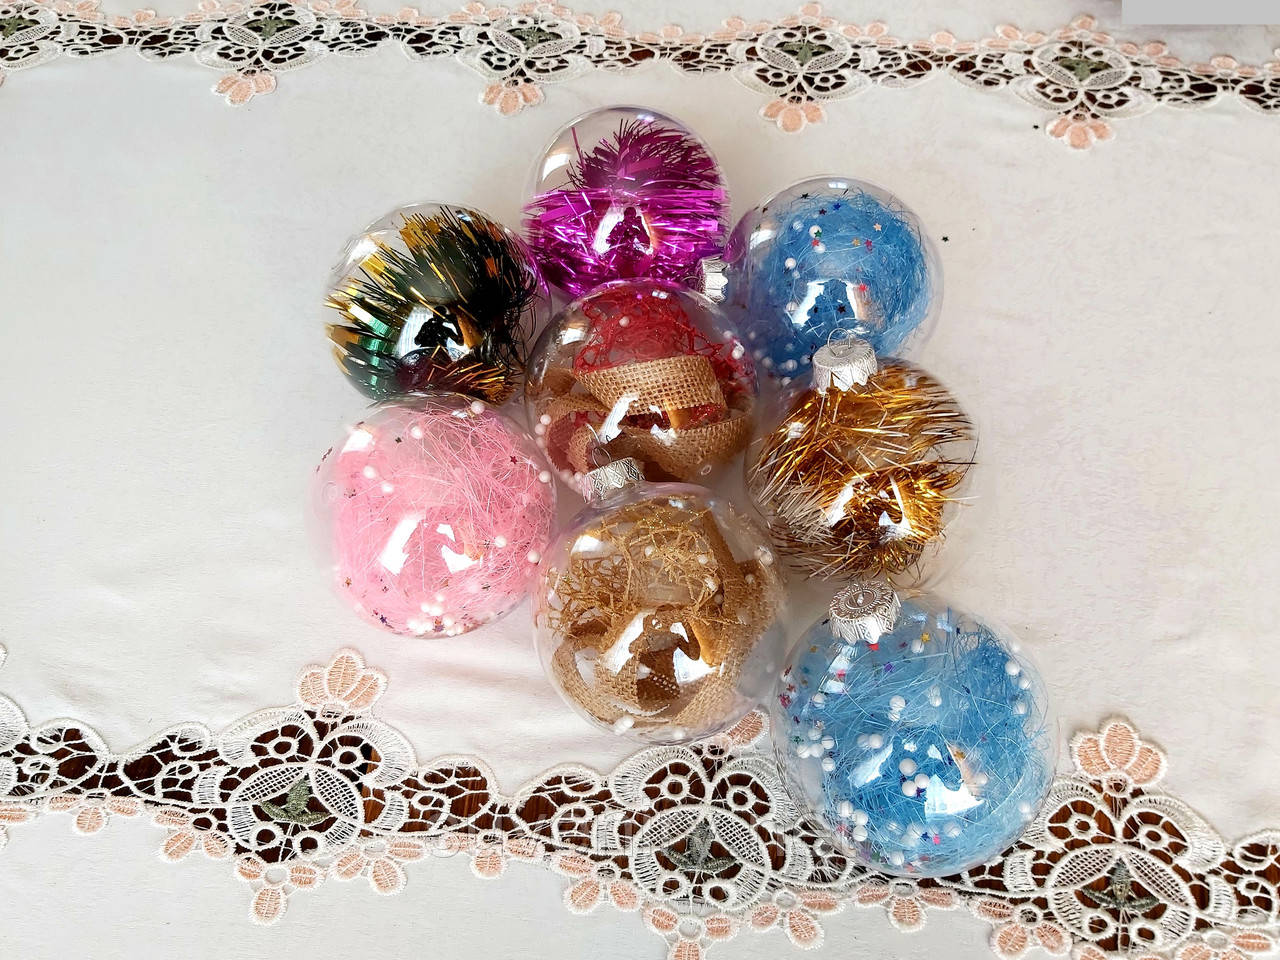 Ексклюзивні новорічні кулі на ялинку 10см, фото 1